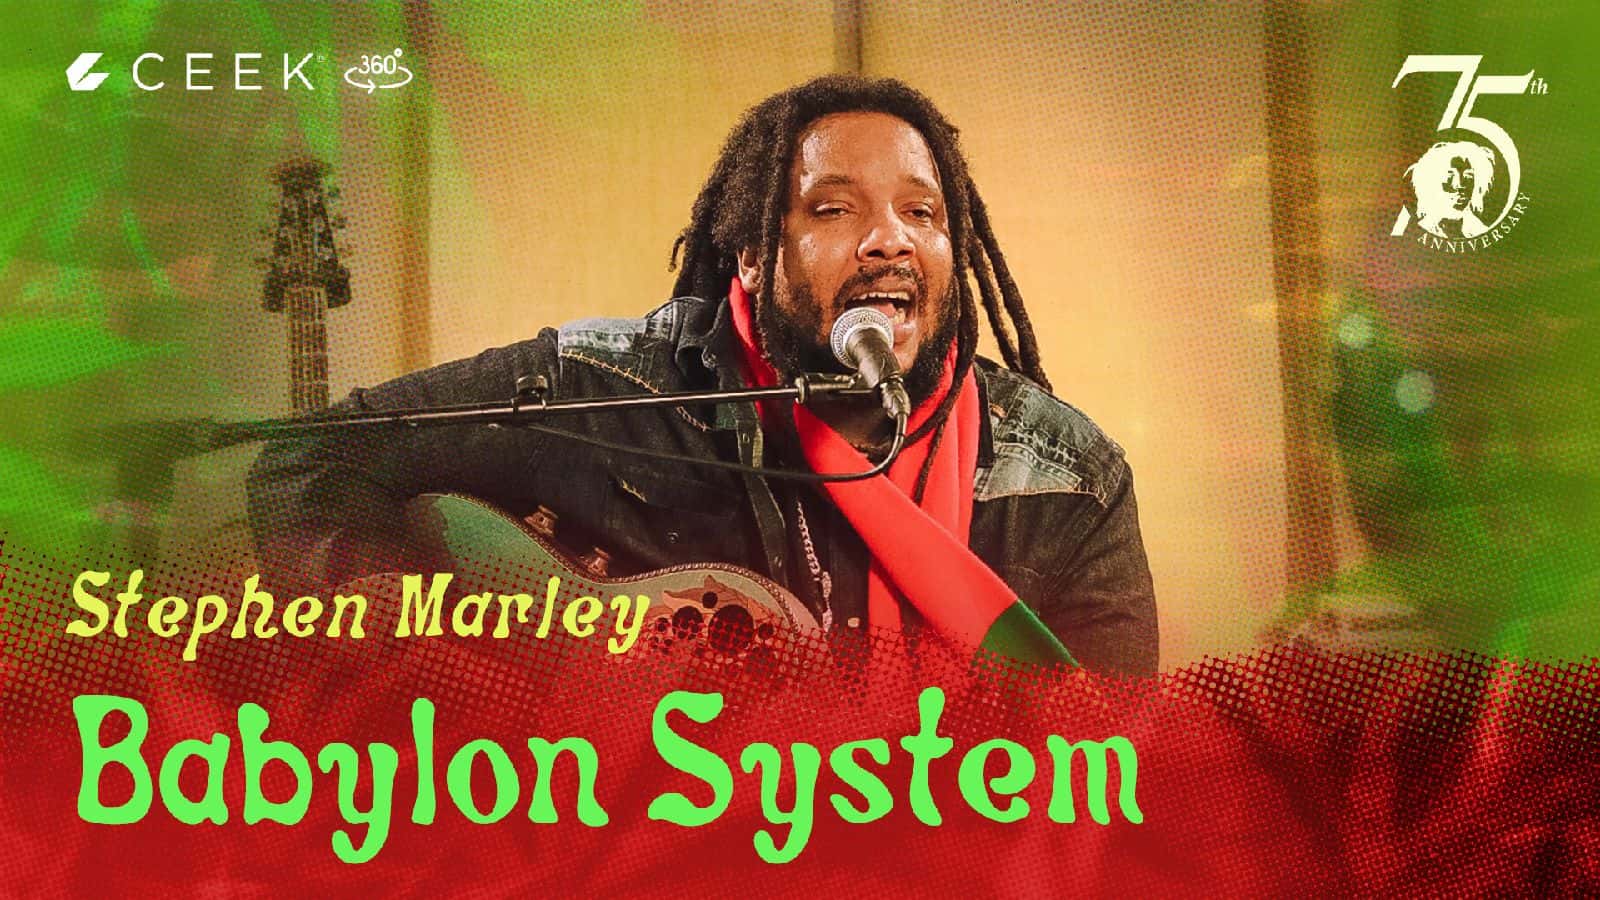 360 Babylon System